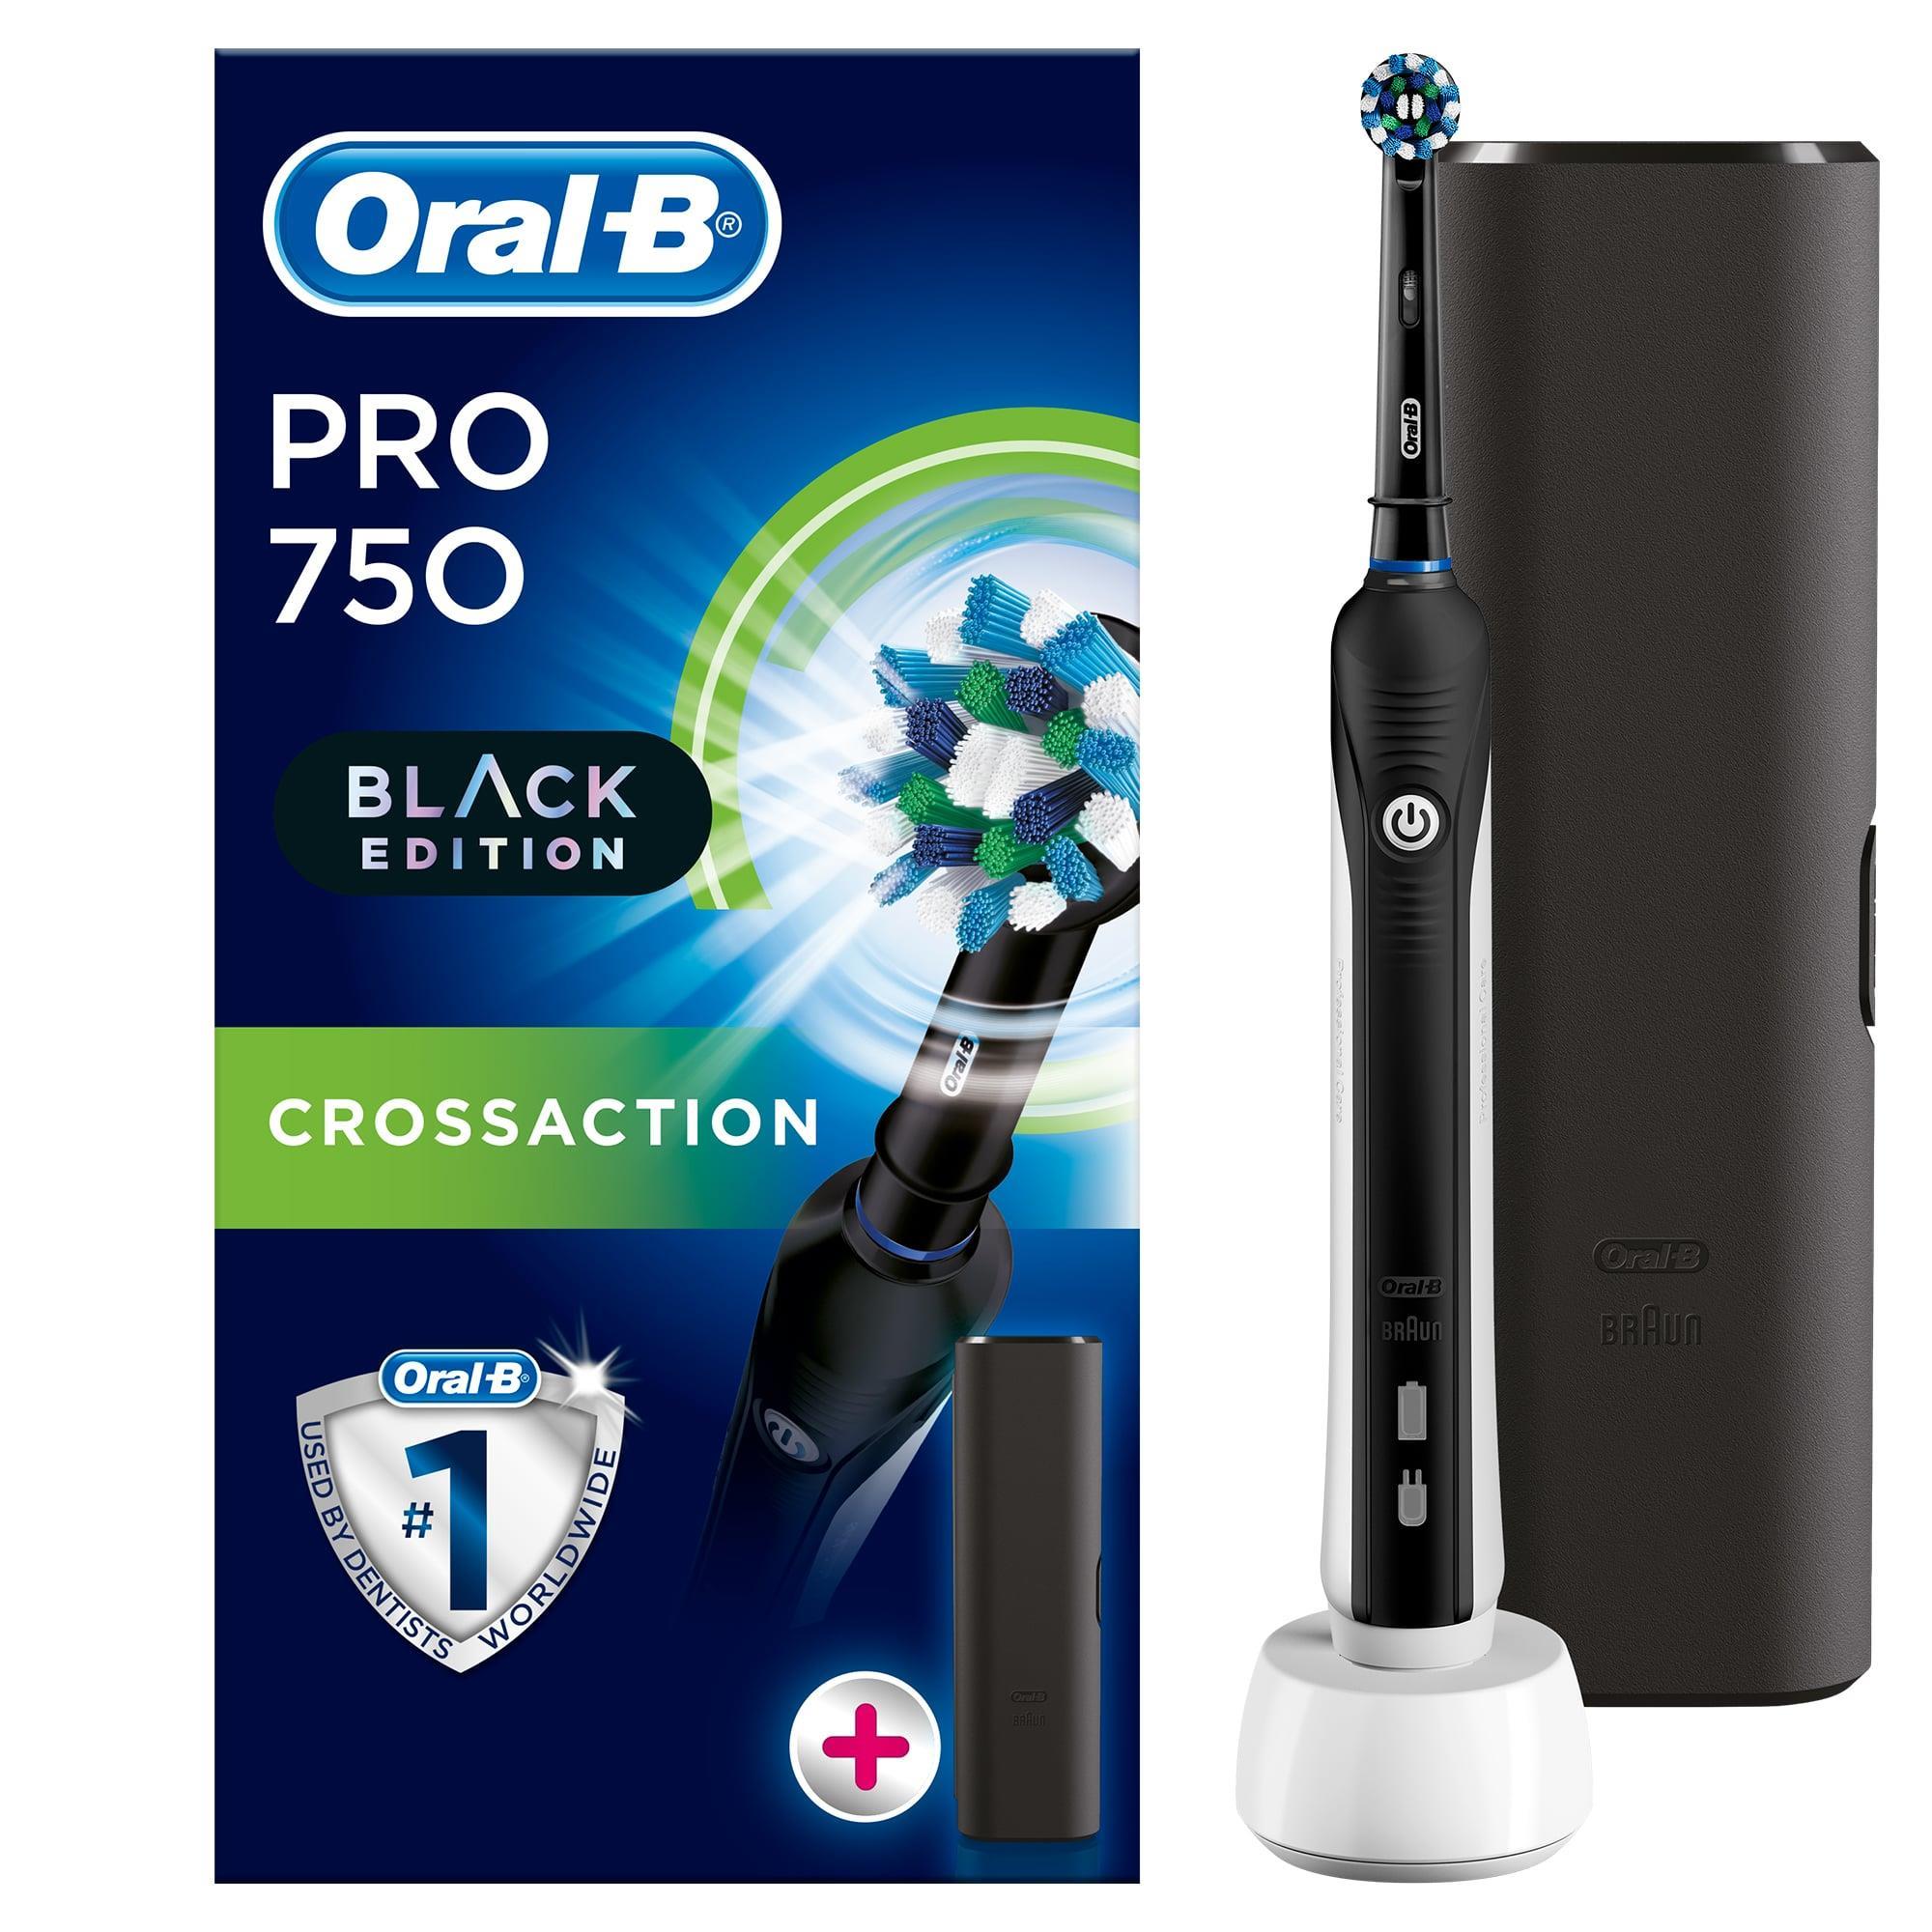 Oral-B Pro 750 Şarj Edilebilir Diş Fırçası Cross Action Siyah + Seyahat Kabı Hediyeli